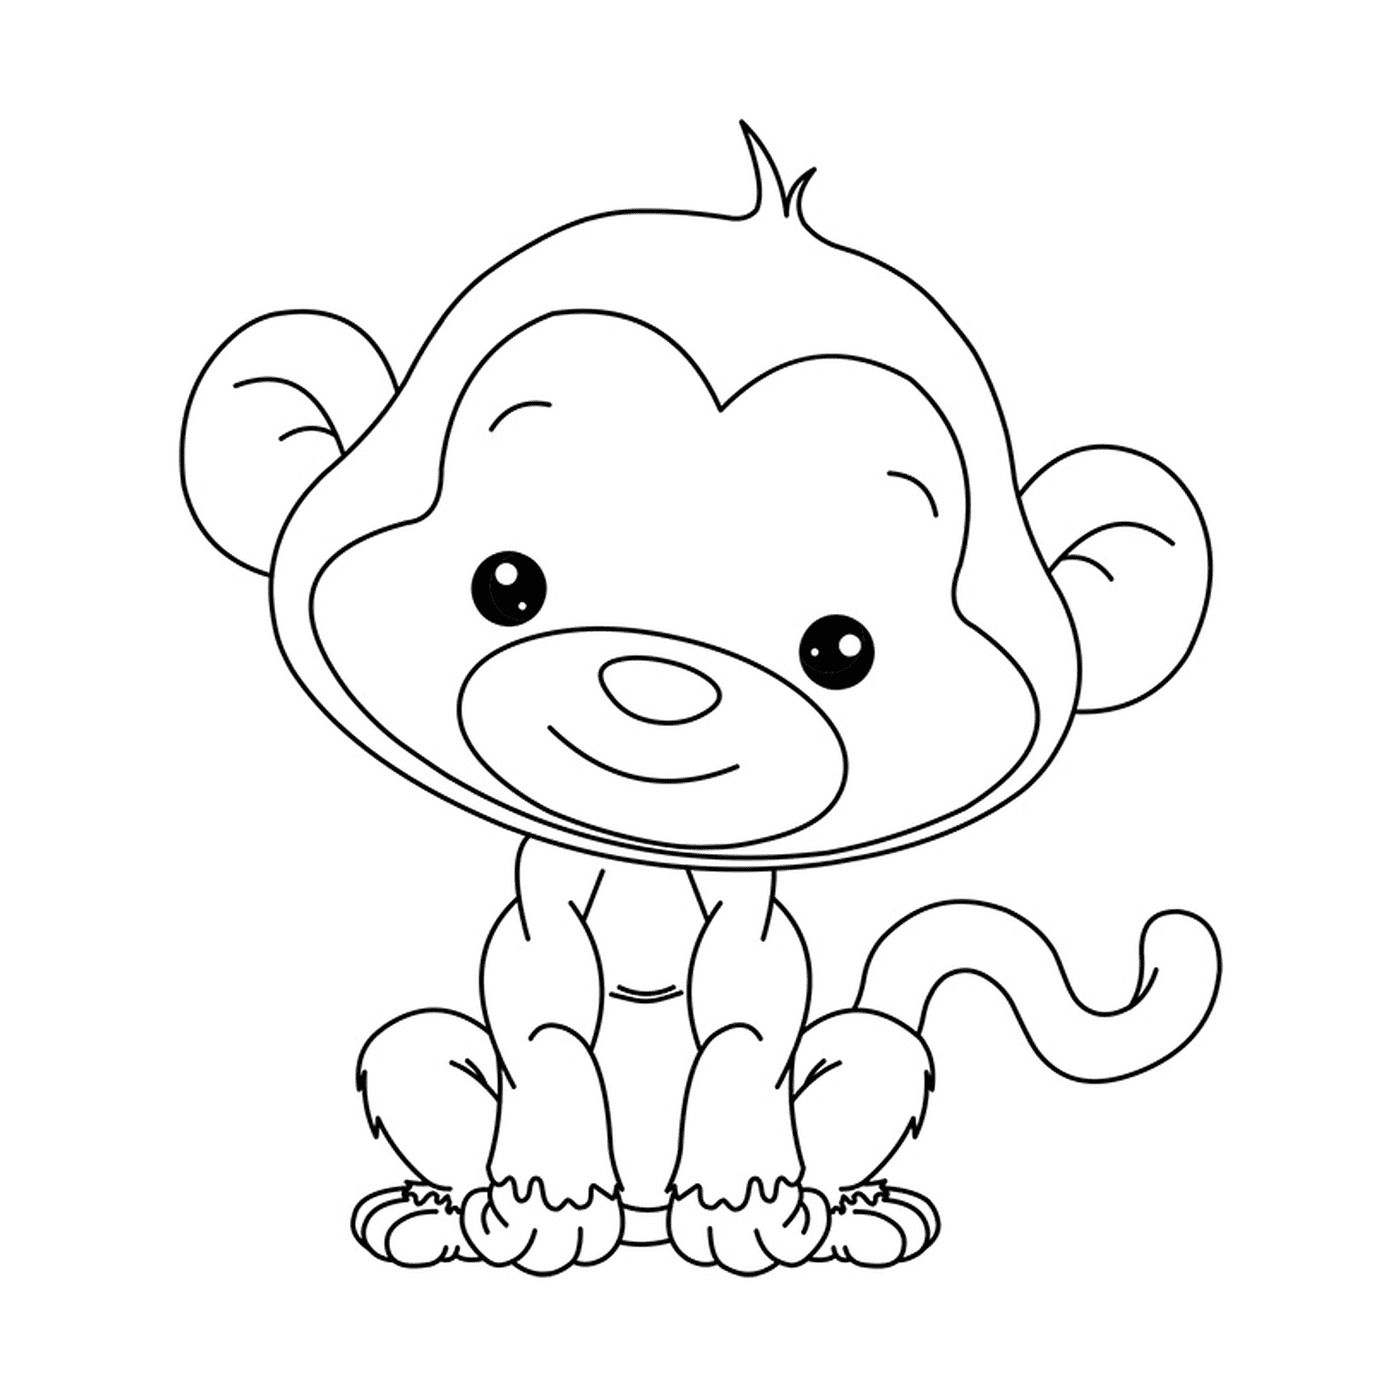  可爱的小猴子 